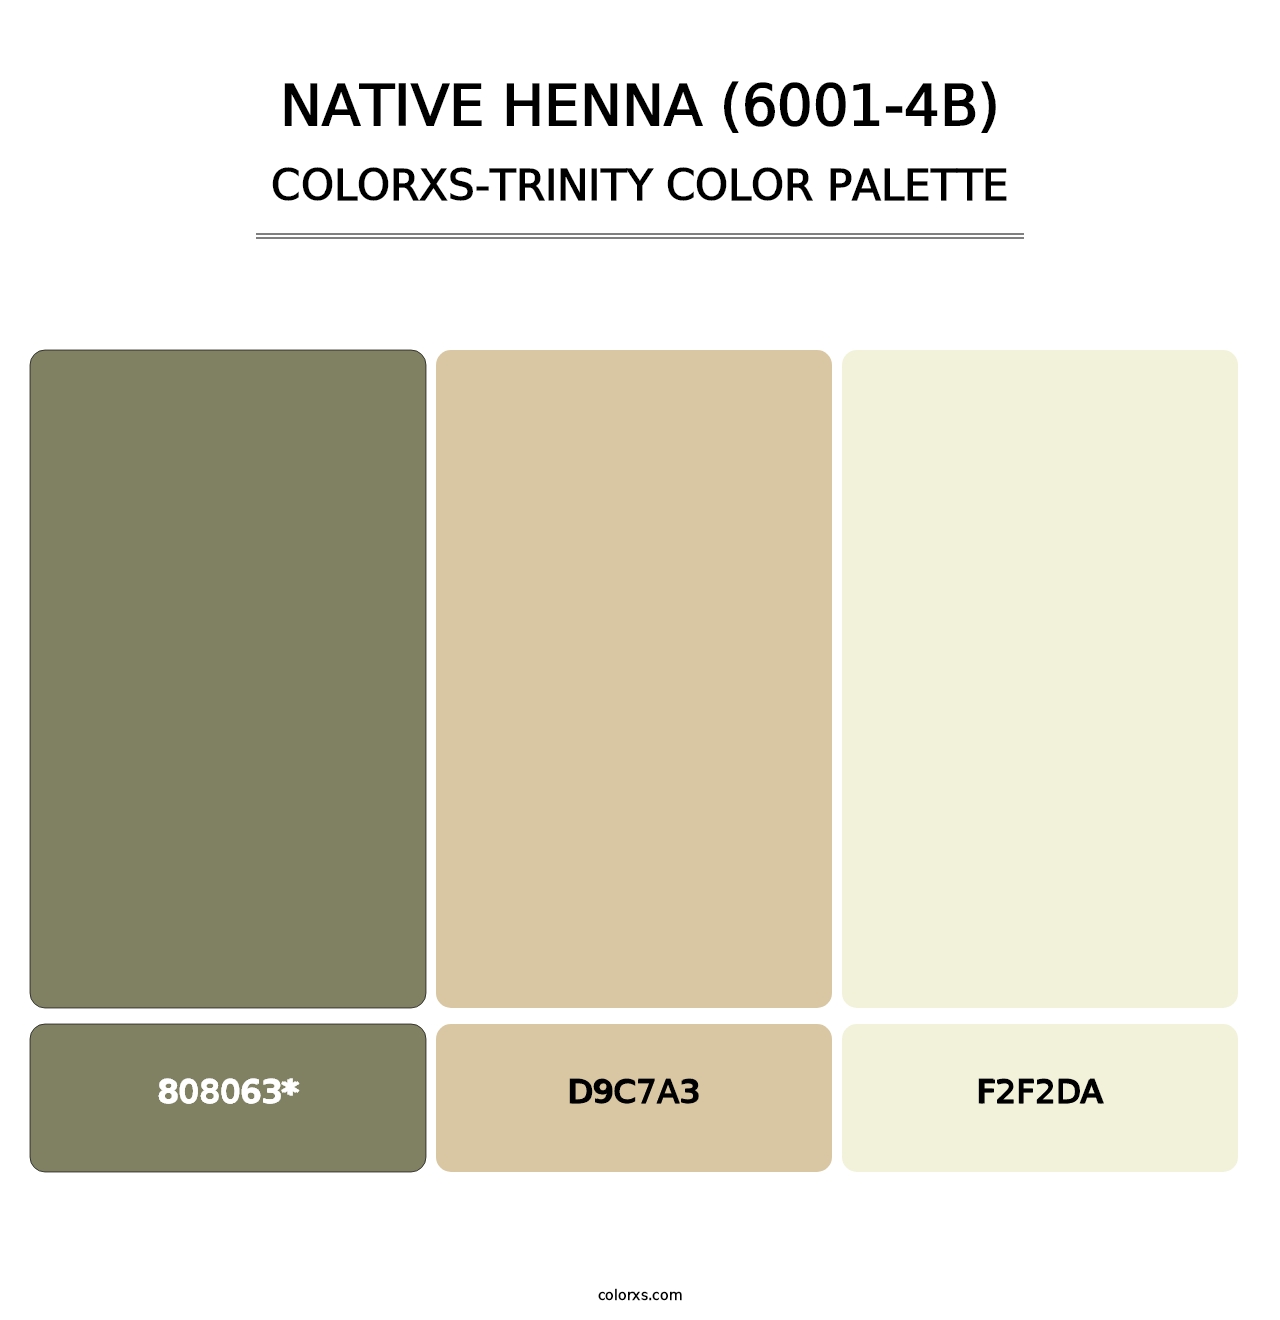 Native Henna (6001-4B) - Colorxs Trinity Palette